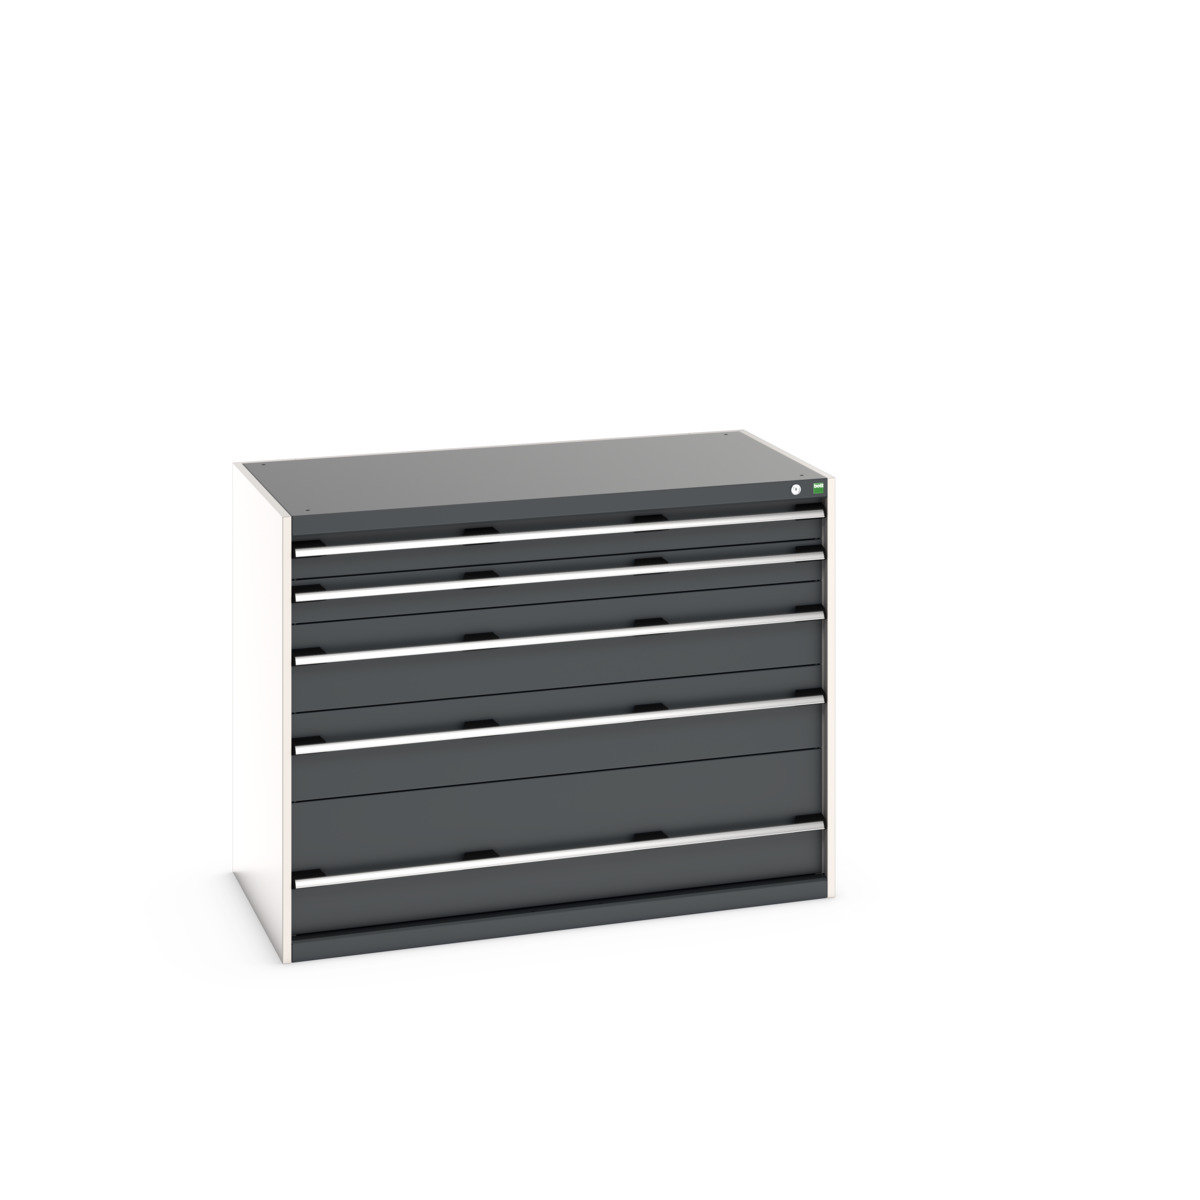 40030092.19V - cubio drawer cabinet